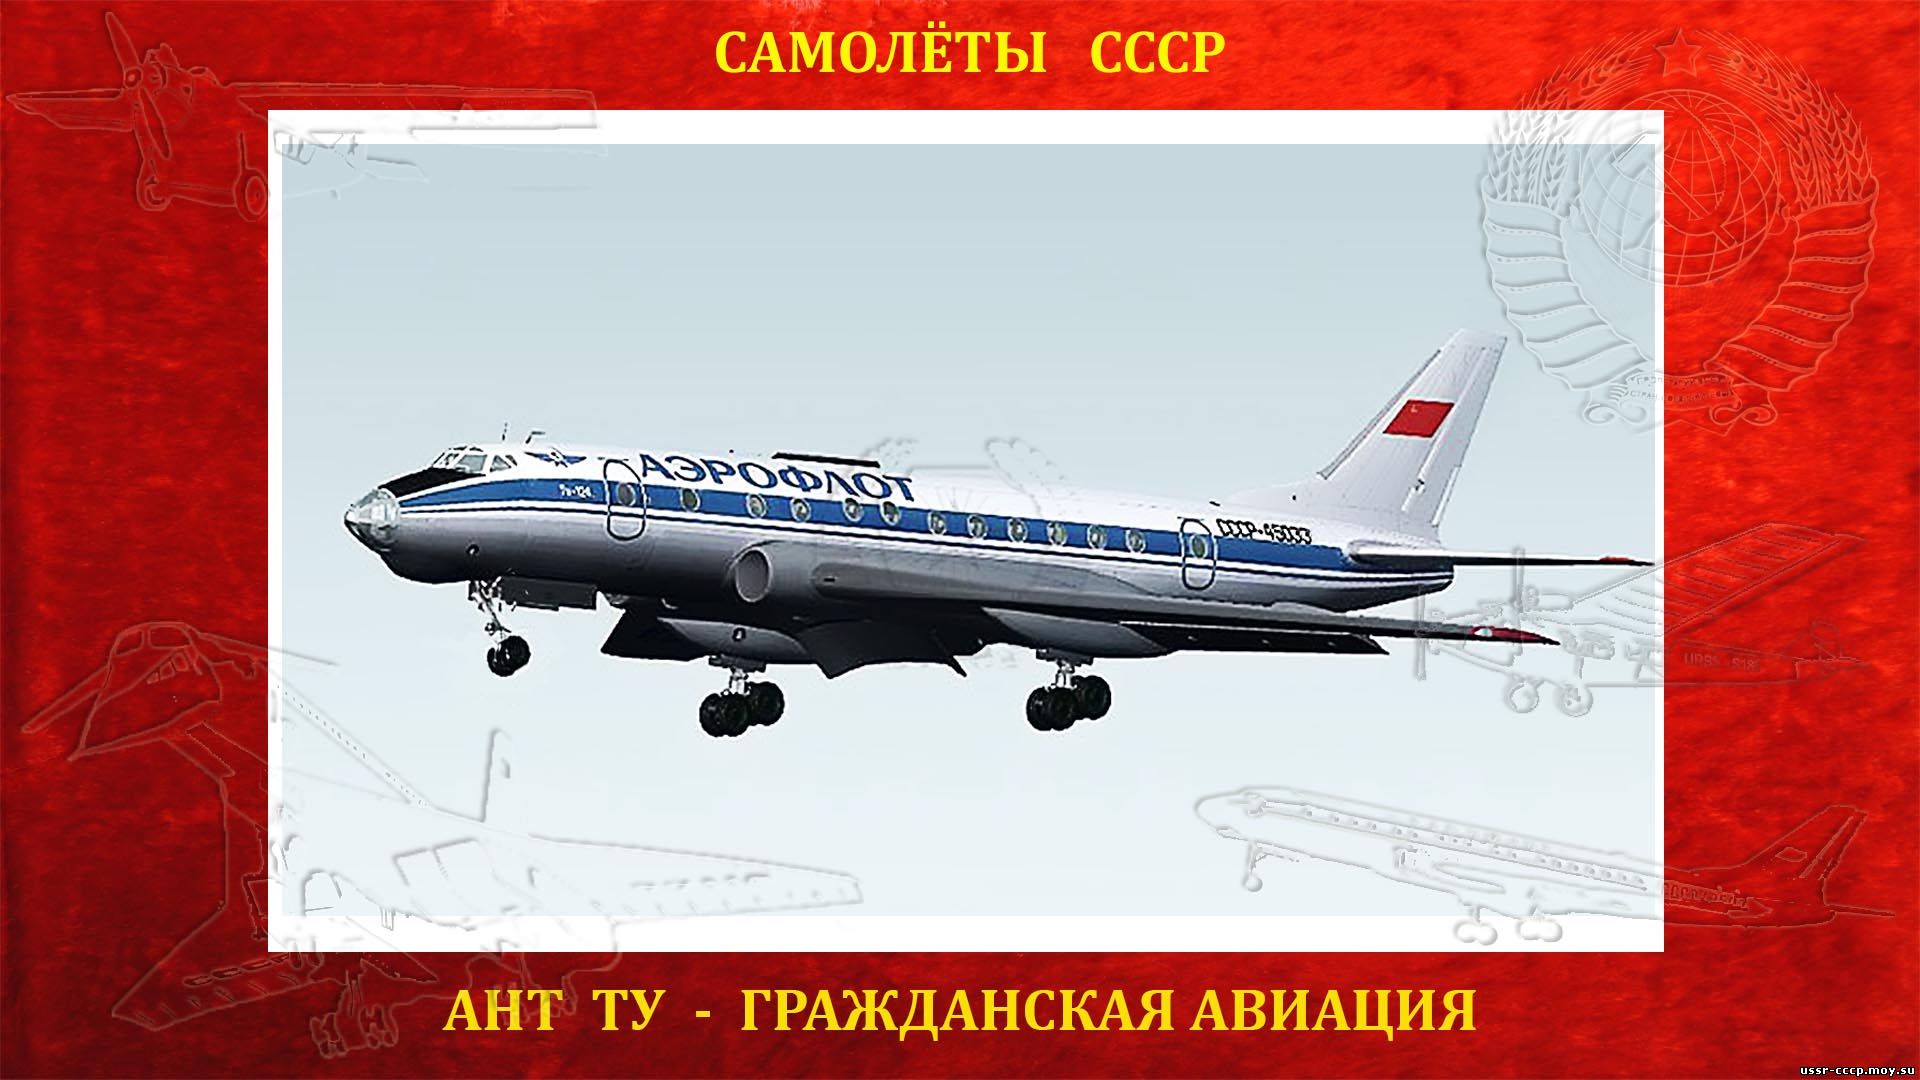 Ту-124 - Ближнемагистральный пассажирский самолет (повествование)